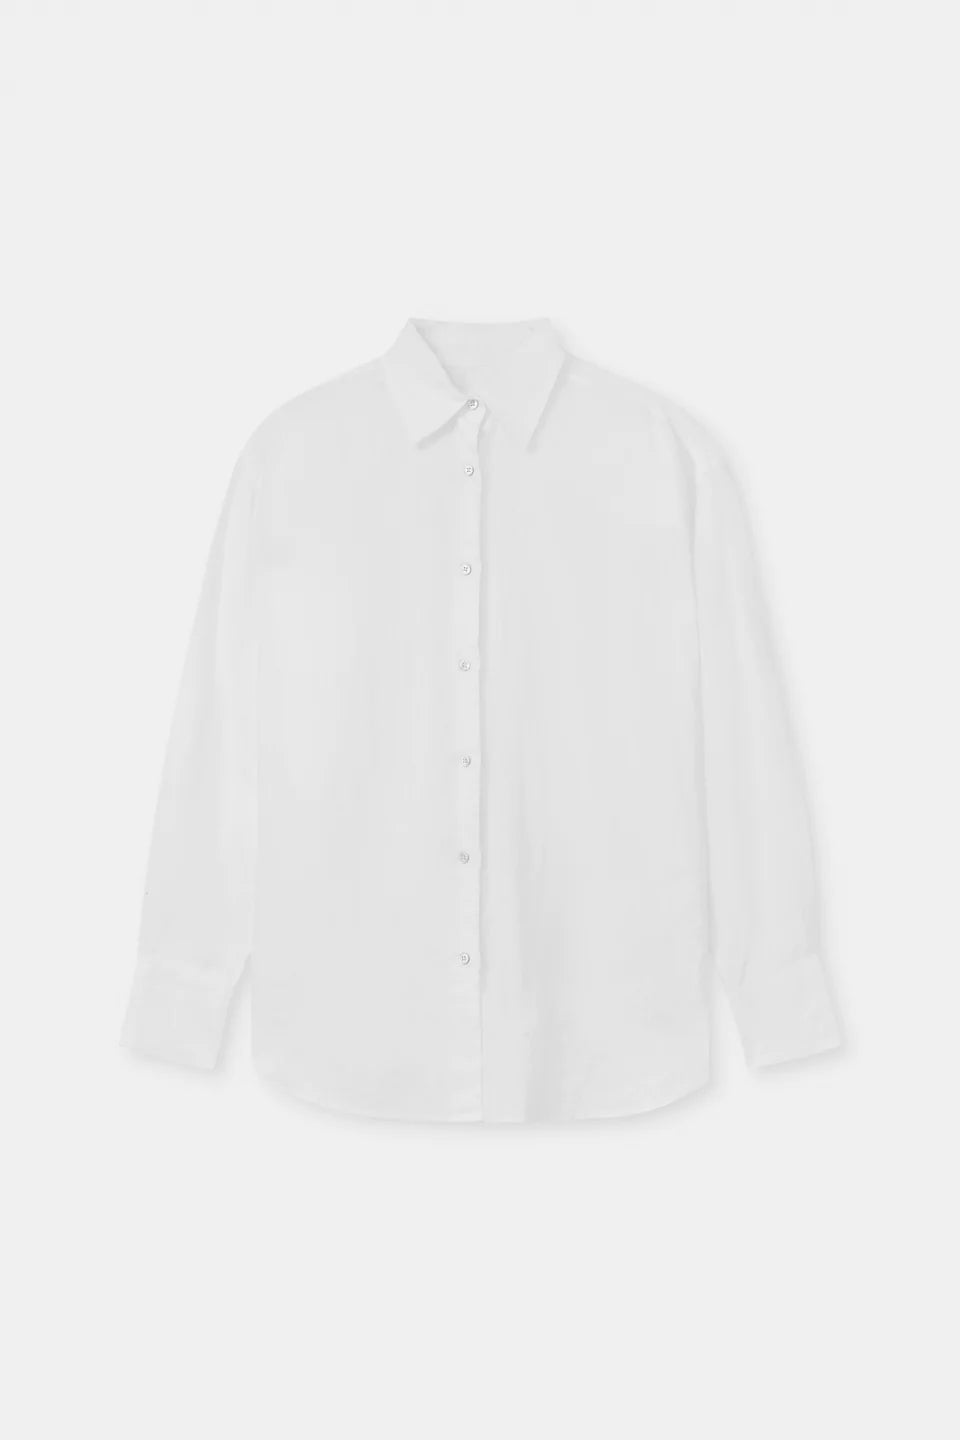 ASSEMBLY Oversized Linen Shirt - White